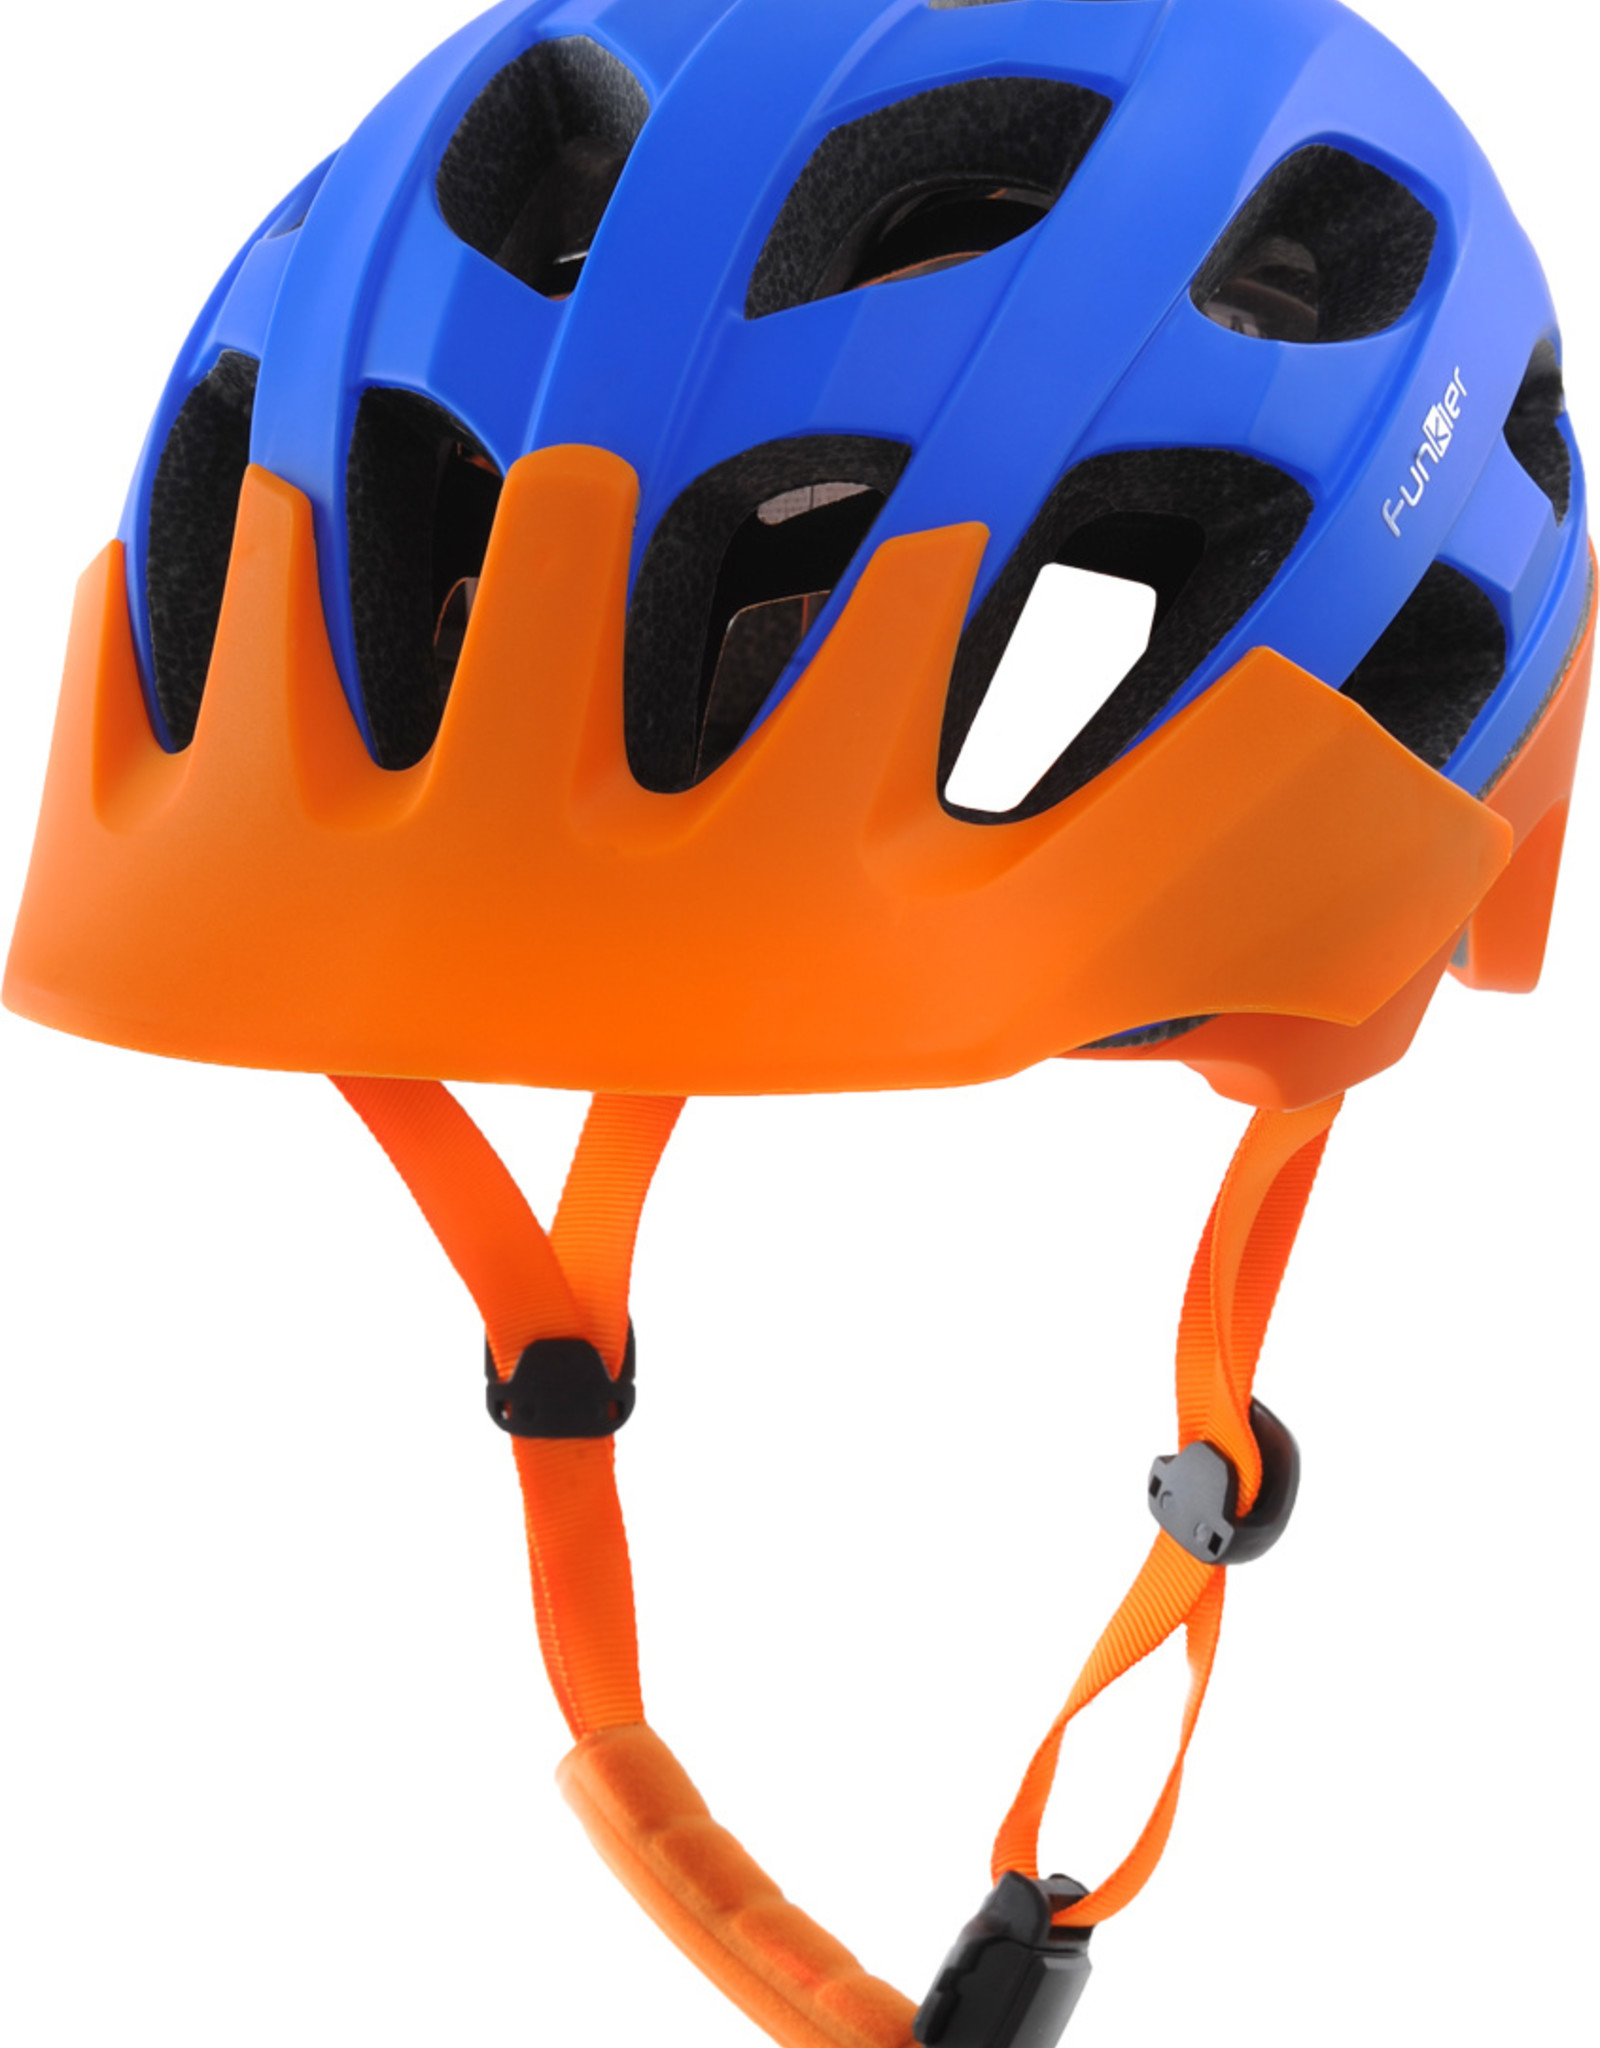 Funkier Camba MTB All Mountain Helmet in Blue/Orange